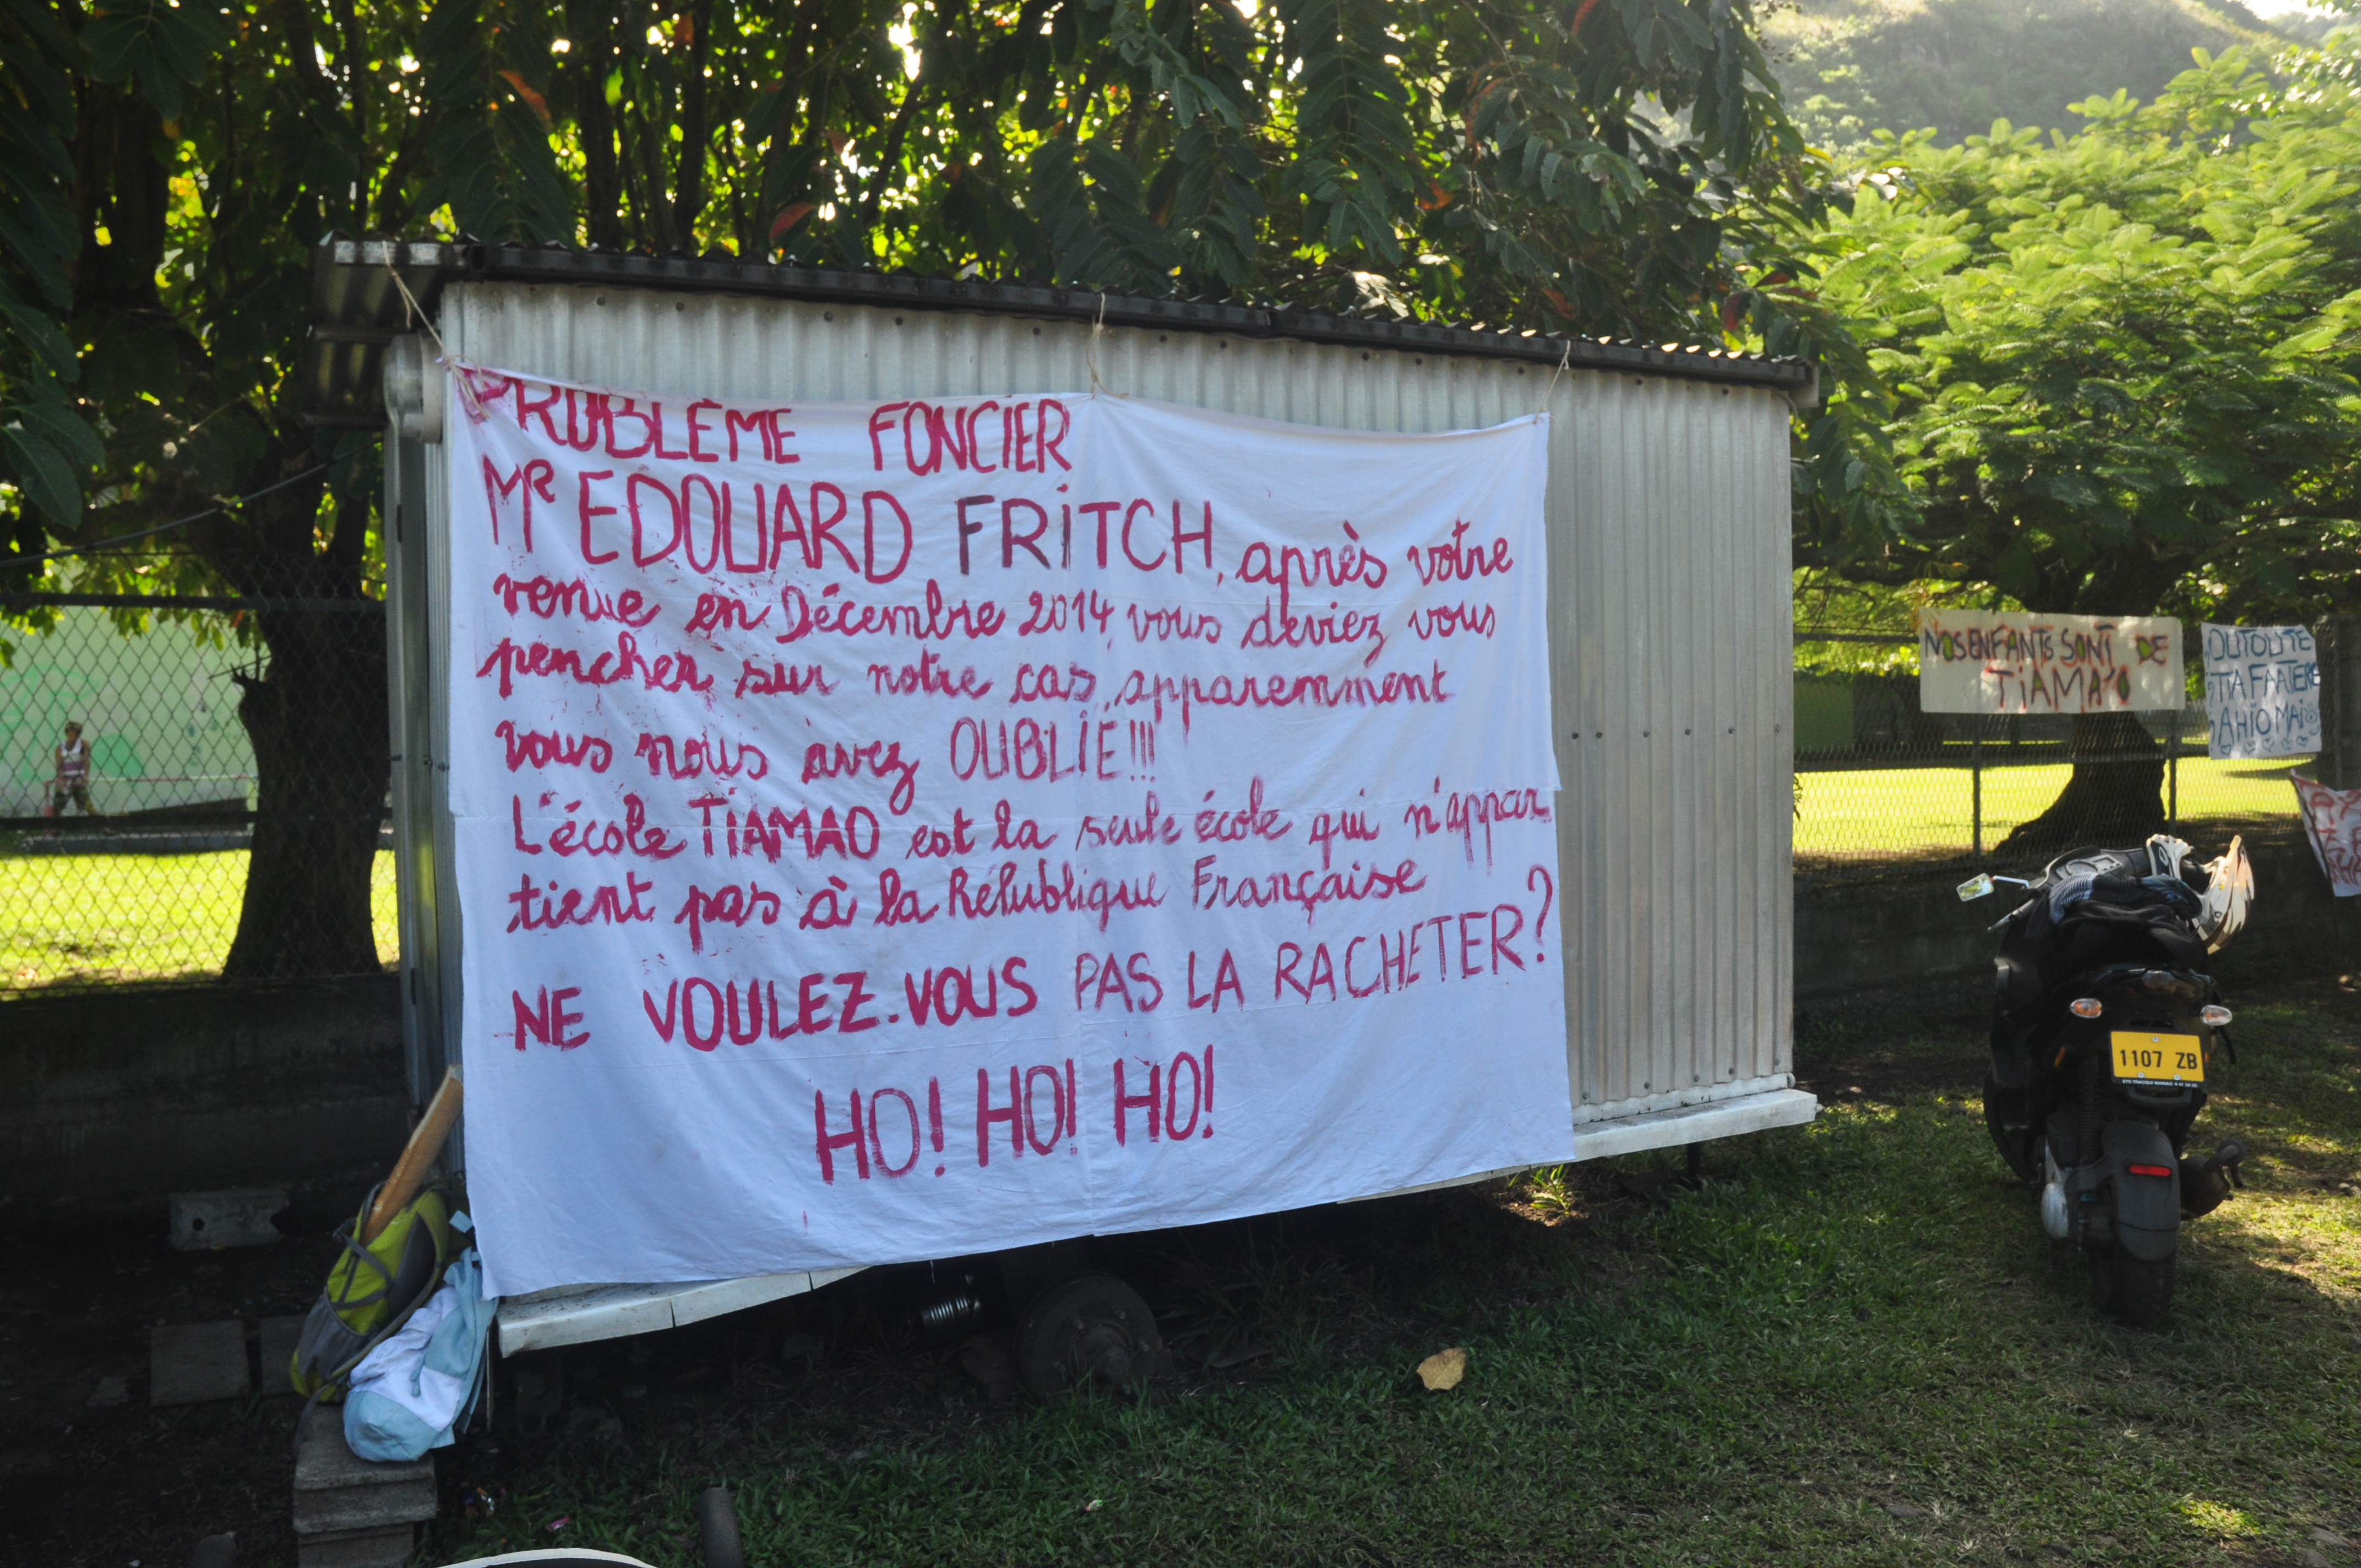 Monsieur Edouard Fritch (…) vous nous avez oublié ! » pouvait-on lire sur cette banderole.